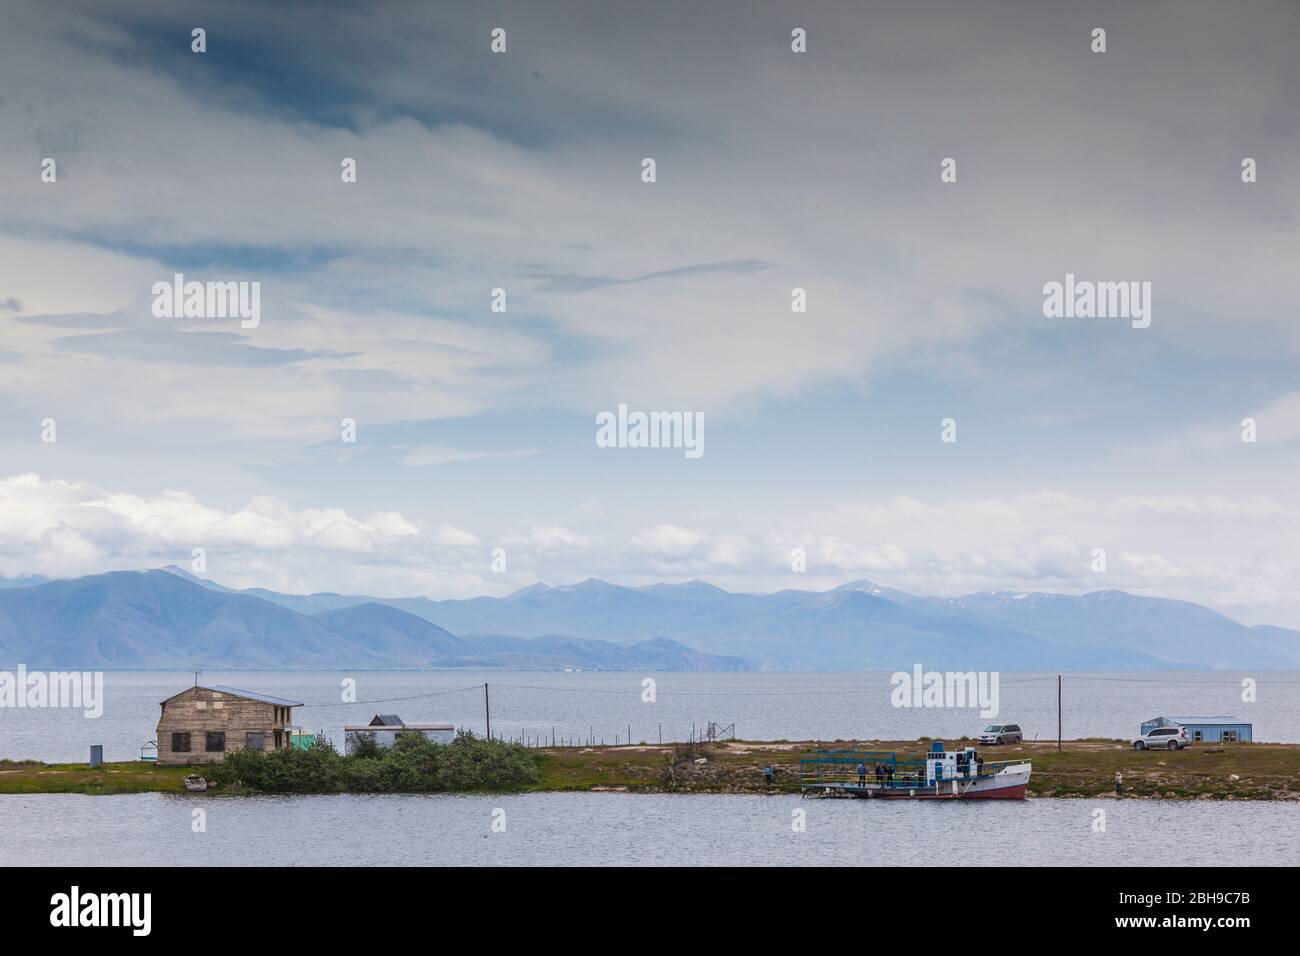 Armenia, Lake Sevan, Tzovazard, lake view Stock Photo